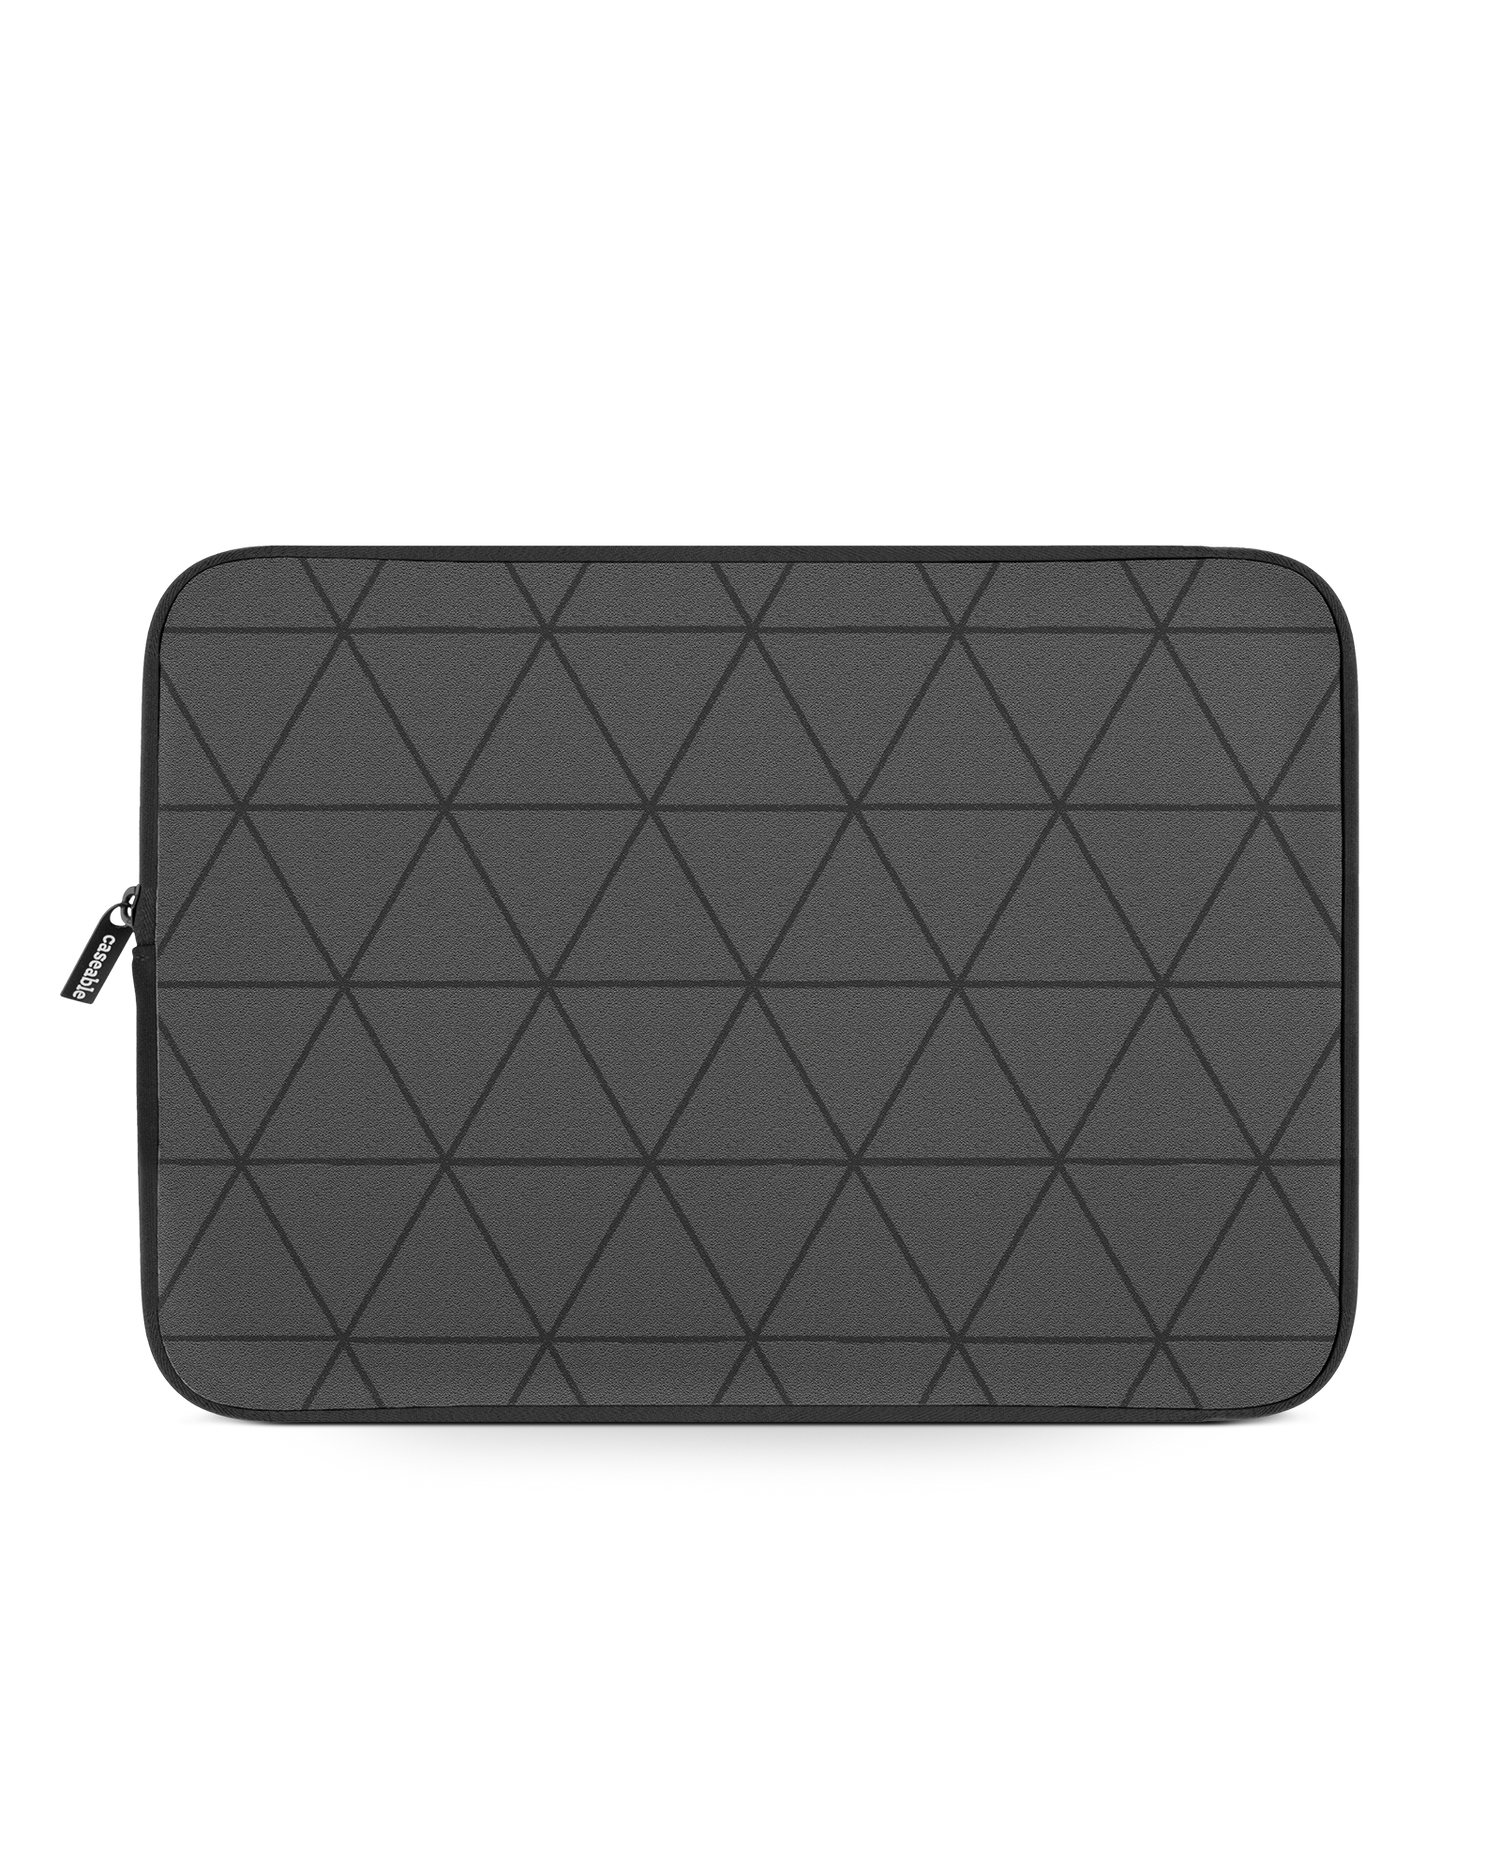 Ash Laptop Case 13-14 inch: Front View